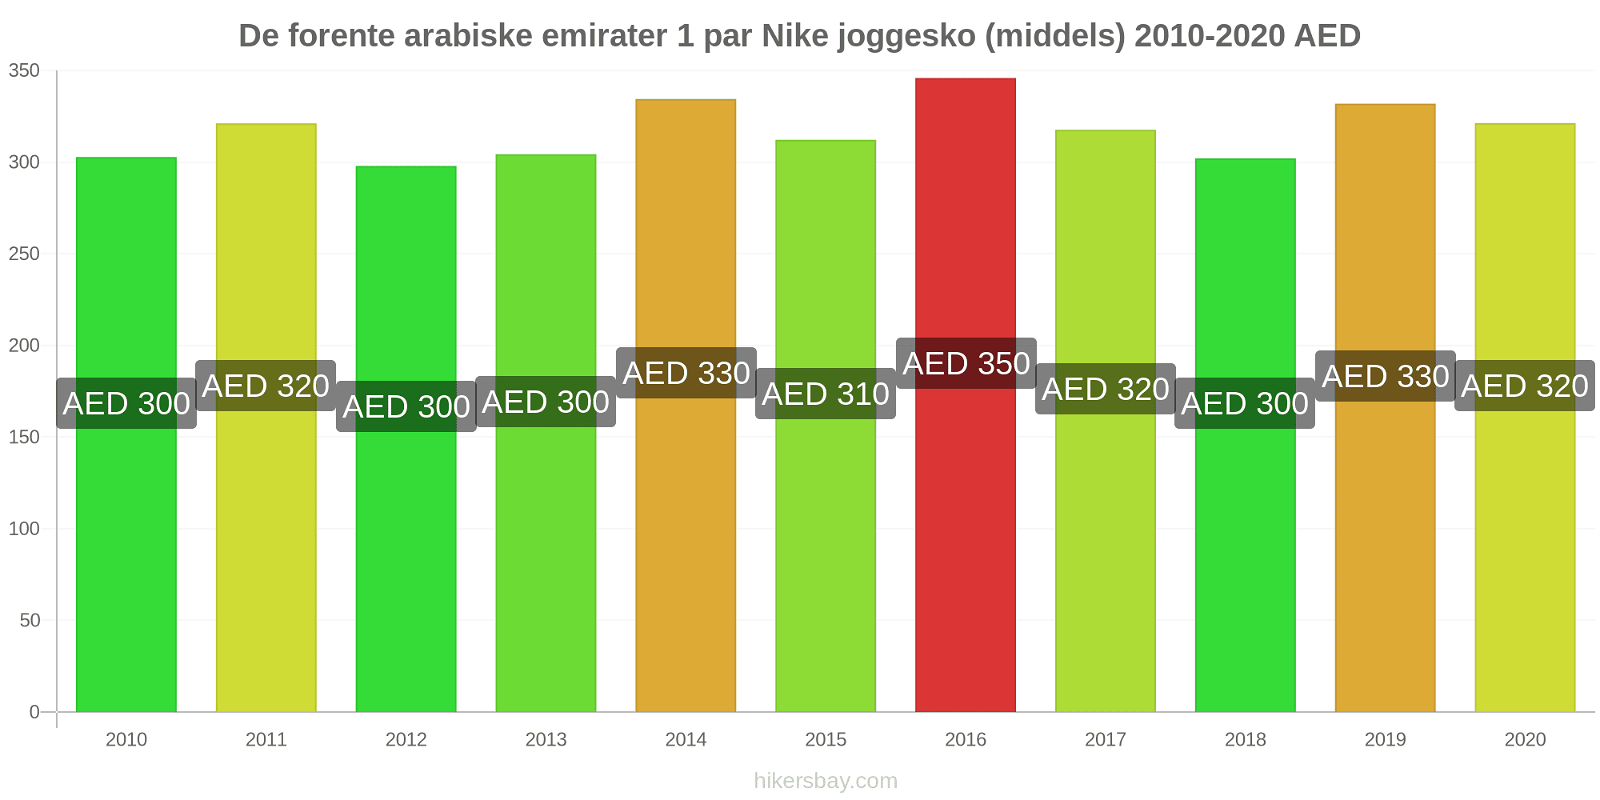 De forente arabiske emirater prisendringer 1 par Nike joggesko (middels) hikersbay.com